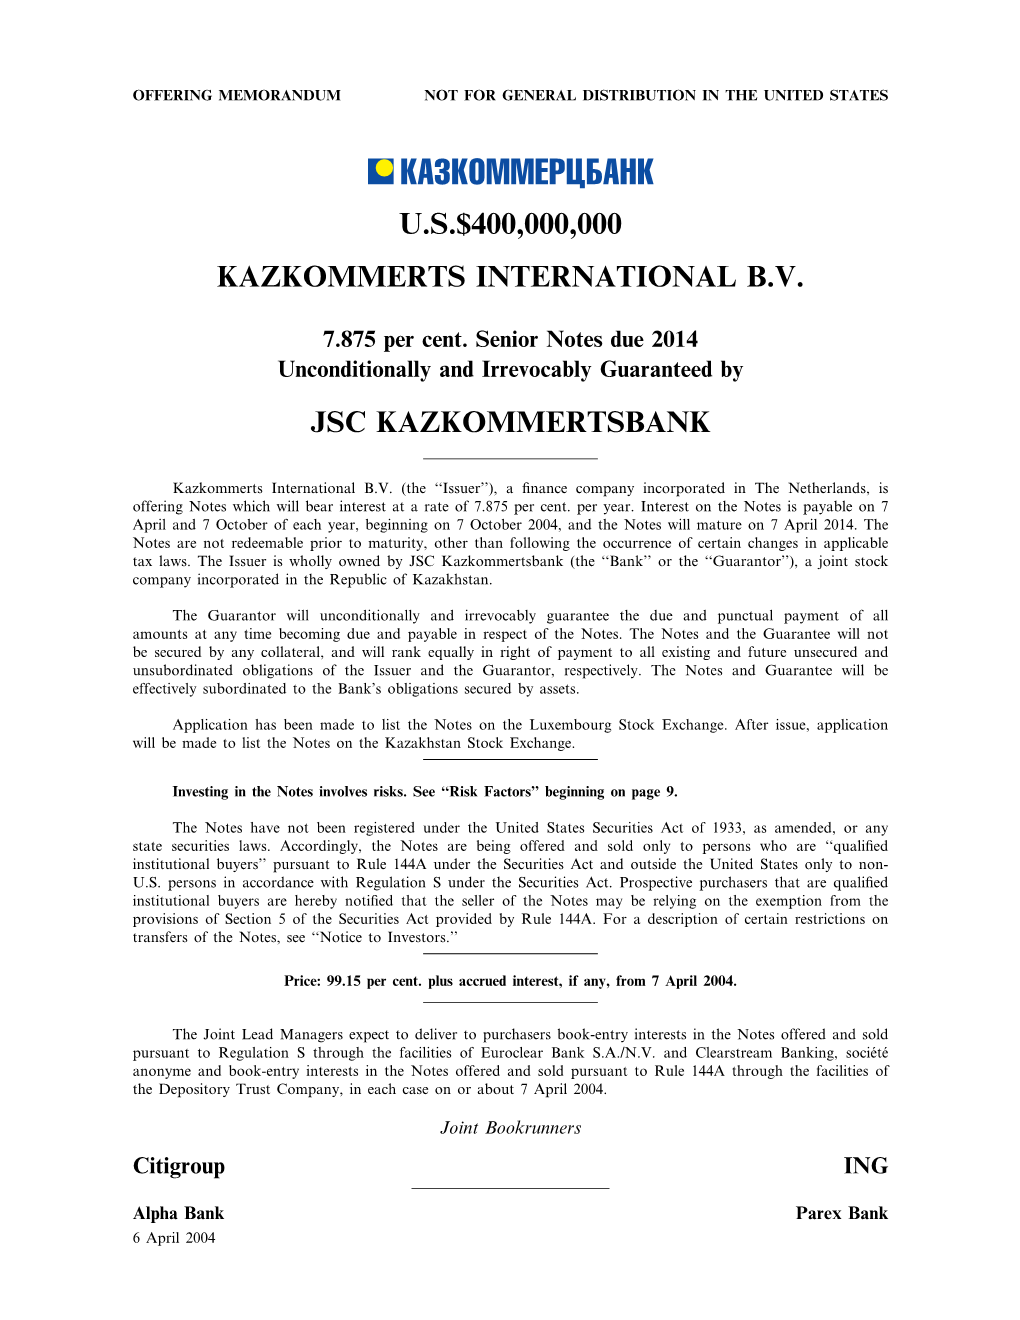 U.S.$400,000,000 Kazkommerts International B.V. Jsc